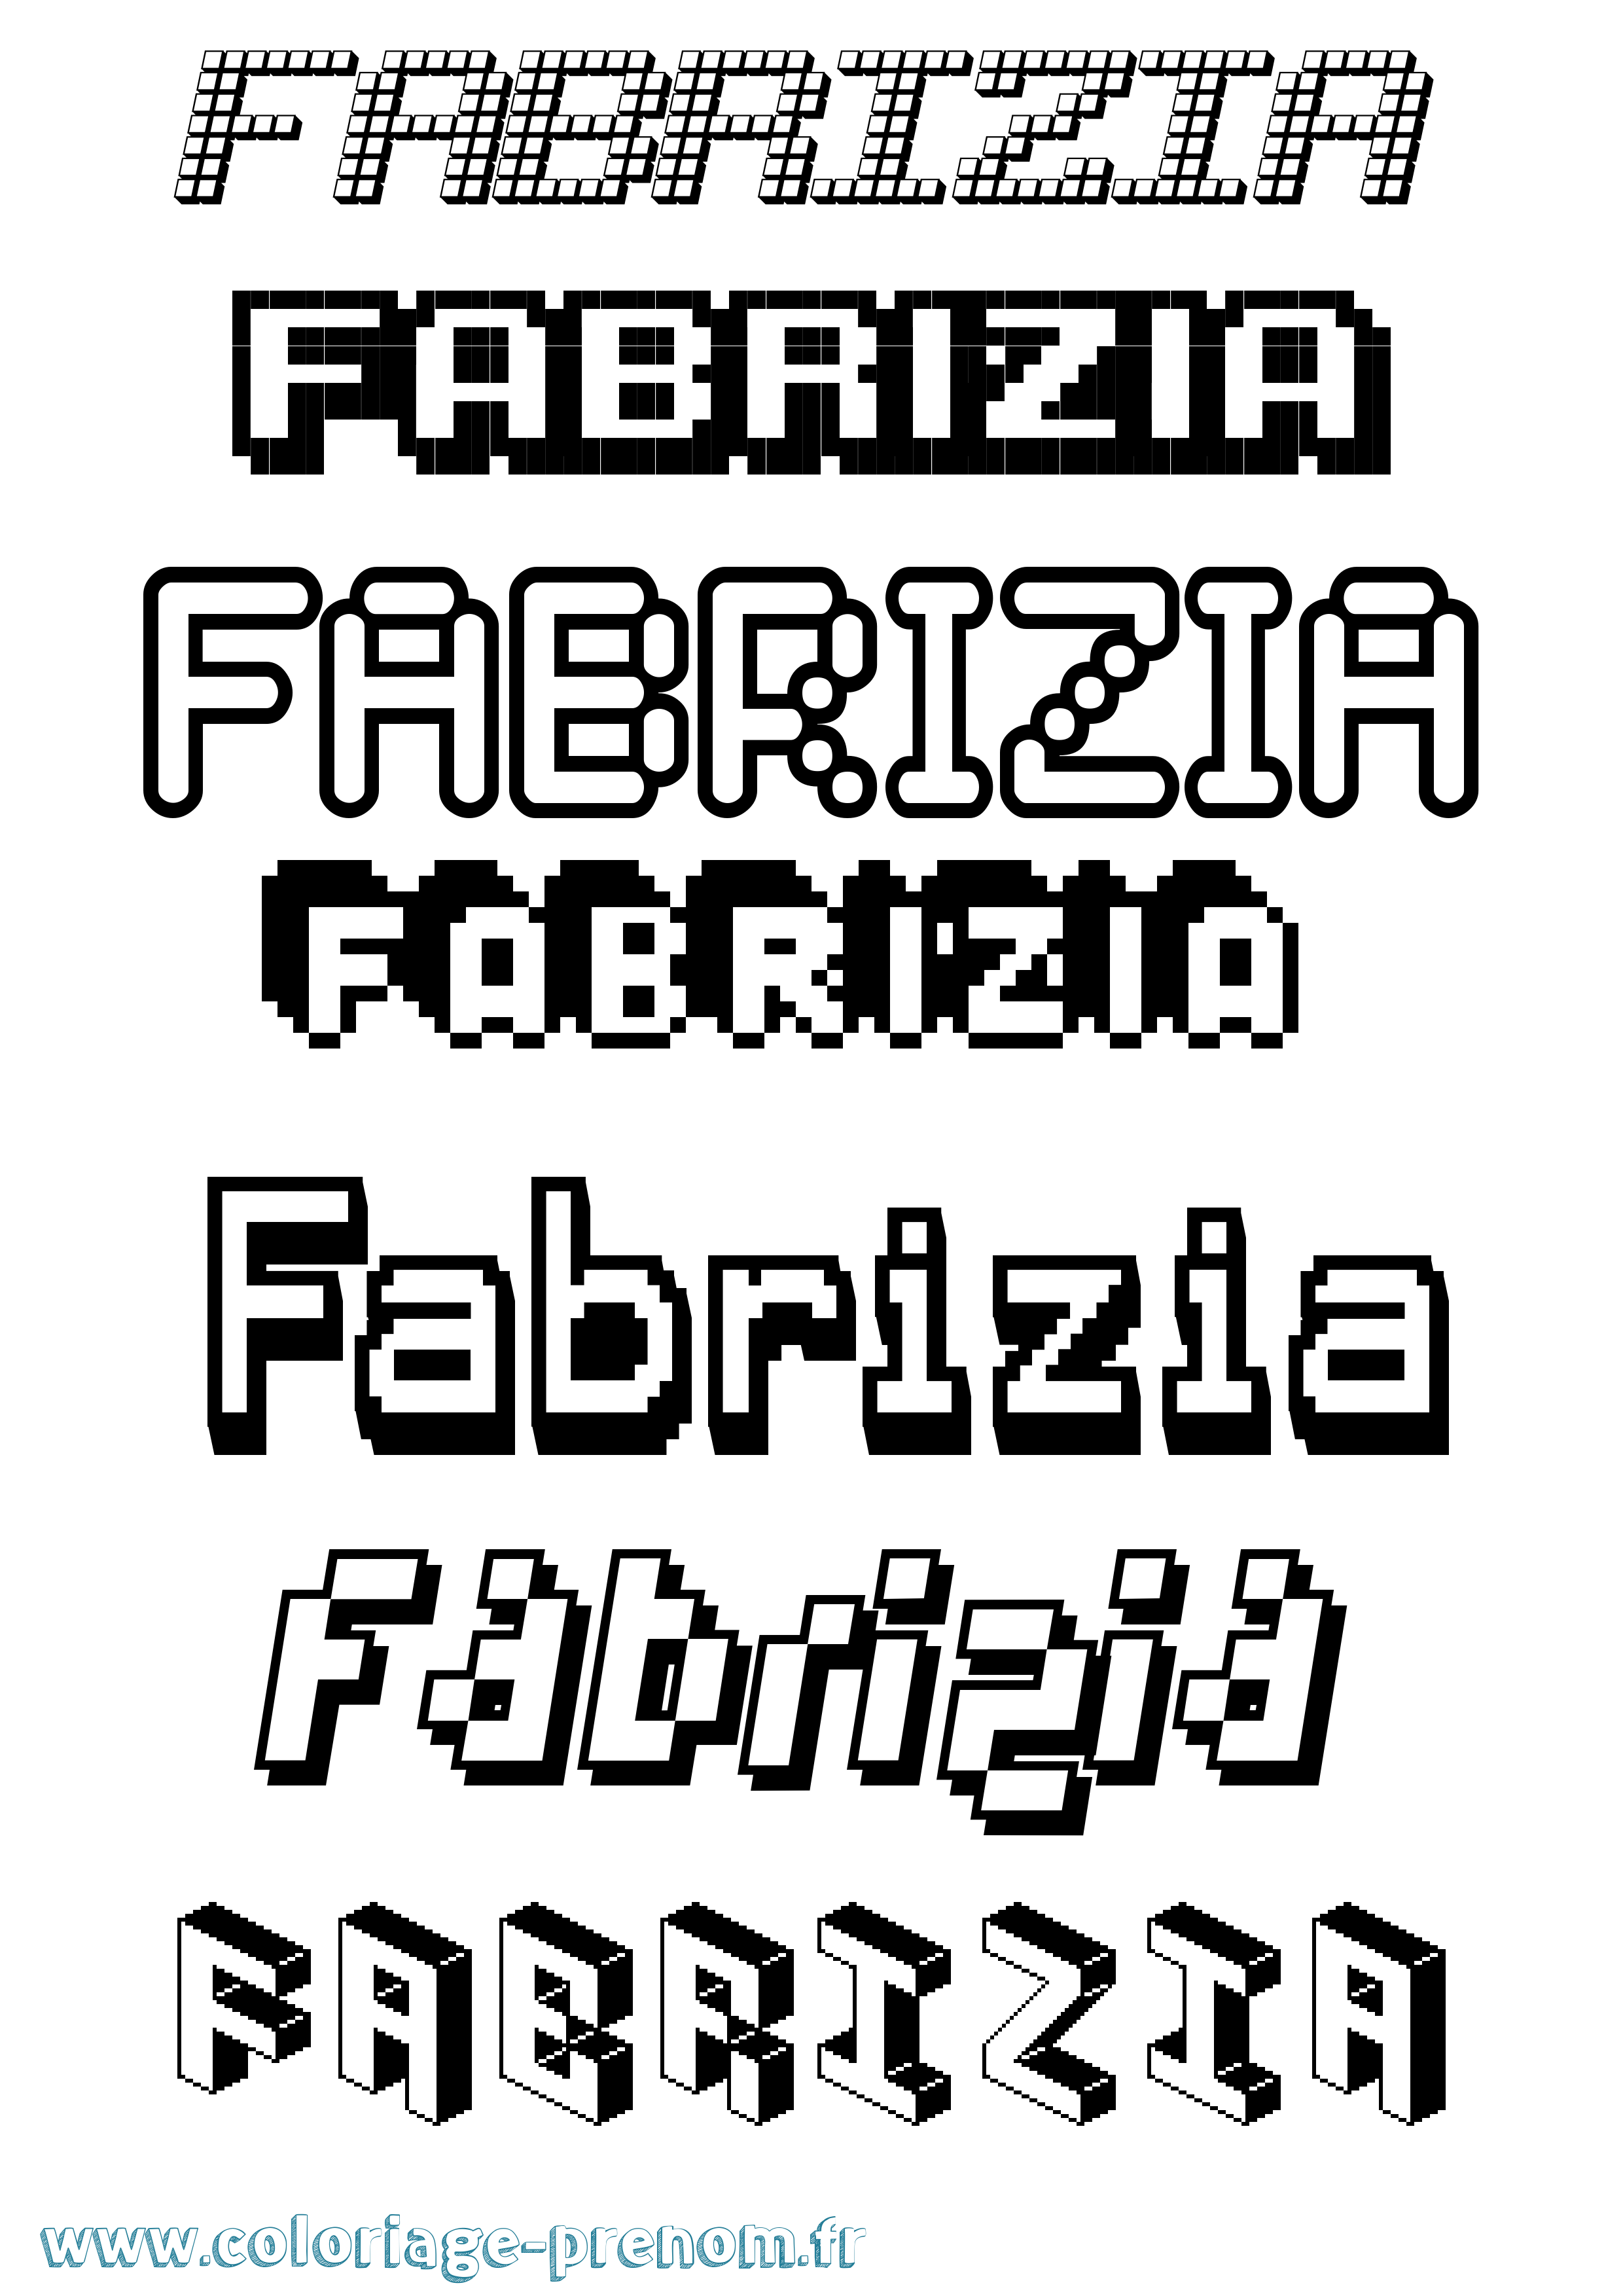 Coloriage prénom Fabrizia Pixel